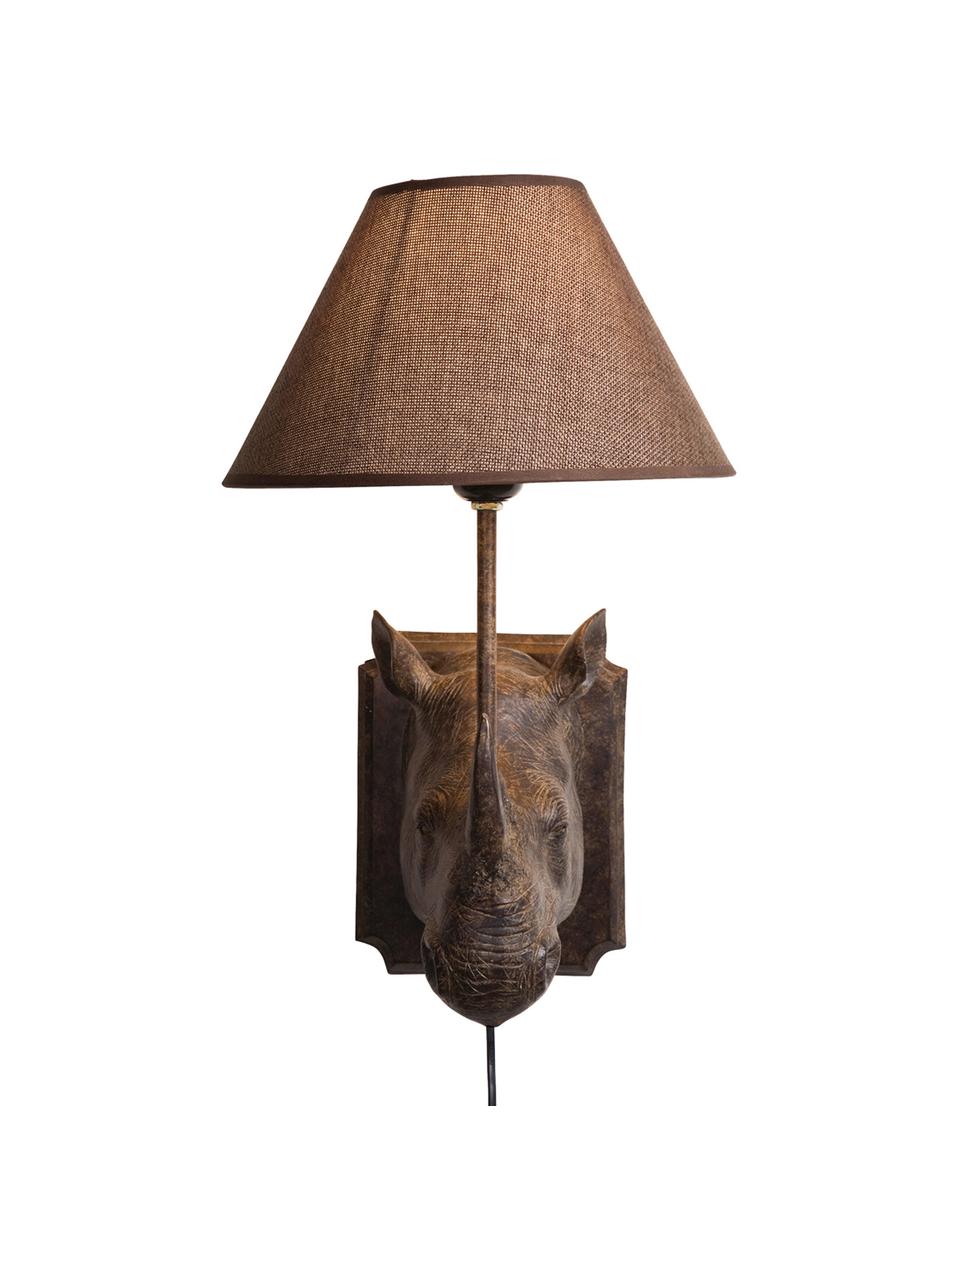 Grote design wandlamp Rhino met stekker, Lamp: polyresin, Lampenkap: linnen, Frame: staal, Bruin, 27 x 40 cm